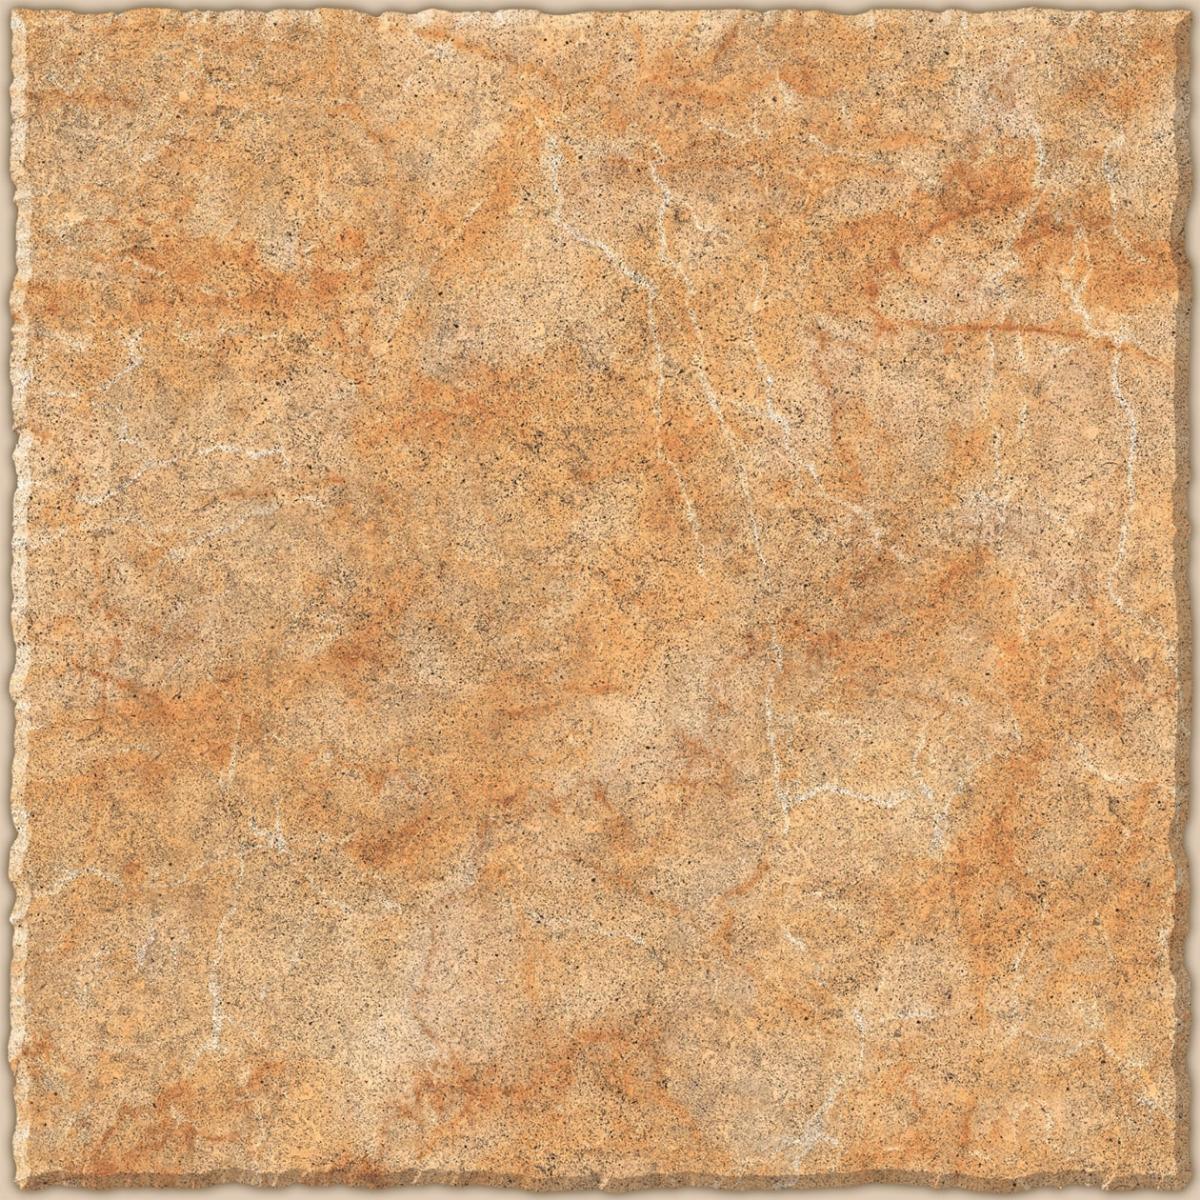 Buy TL Cemento Brown Floor Tiles Online | Orientbell Tiles